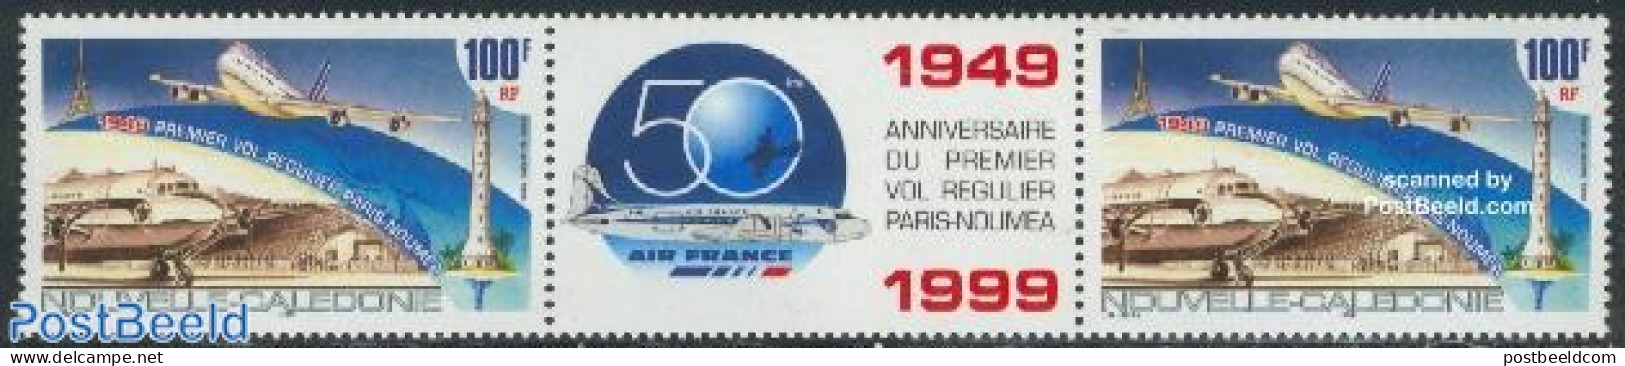 New Caledonia 1999 Paris -Noumea Flight Gutter Pair, Mint NH, Transport - Various - Aircraft & Aviation - Lighthouses .. - Neufs